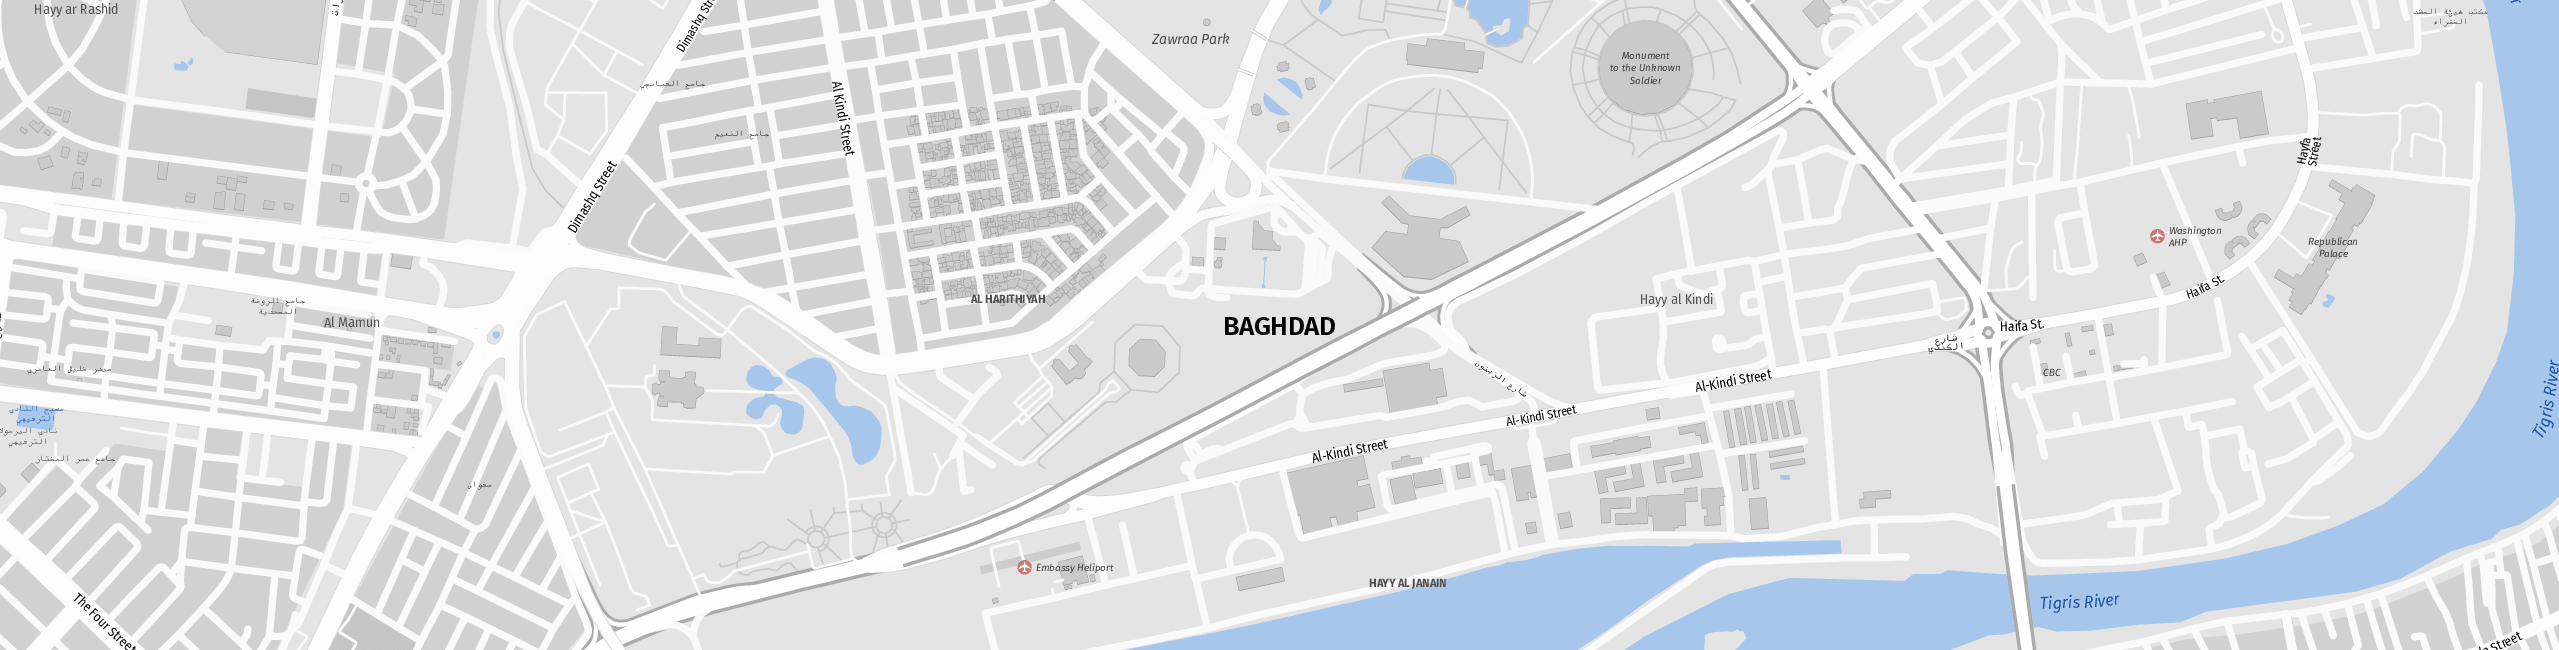 Stadtplan Bagdad zum Downloaden.